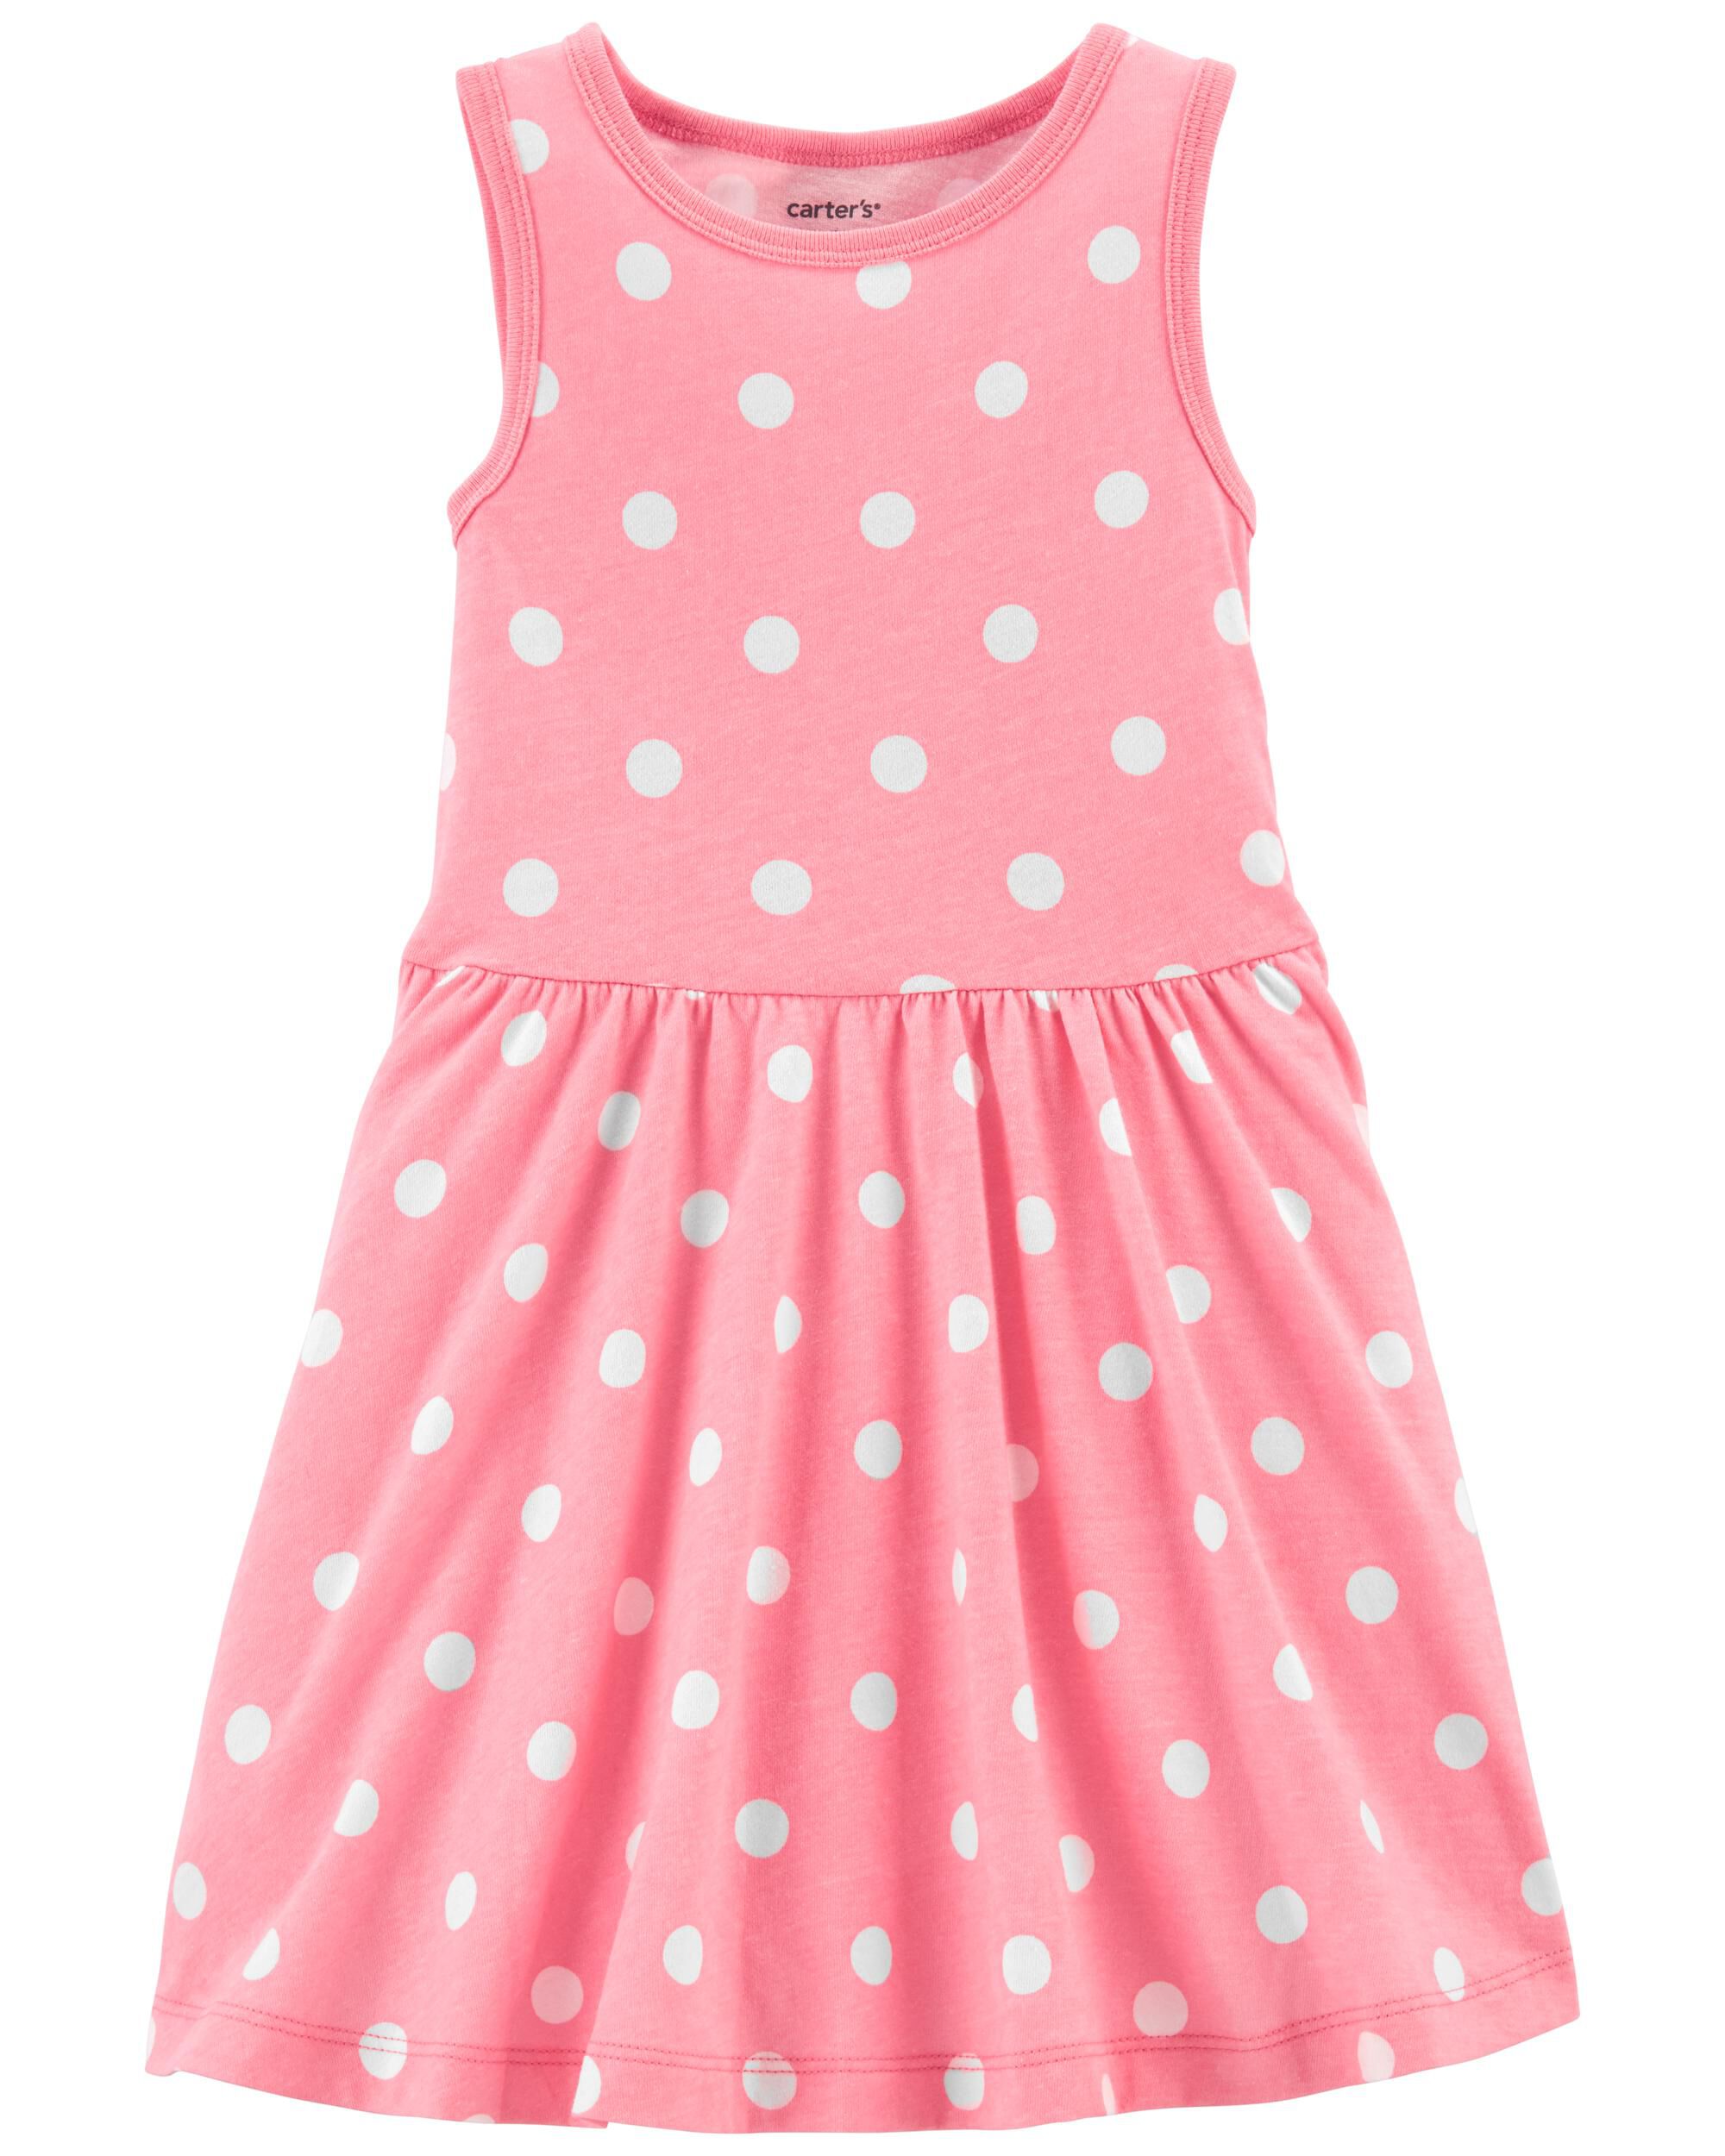 Toddler Pink Polka Dot Twirl Dress ...